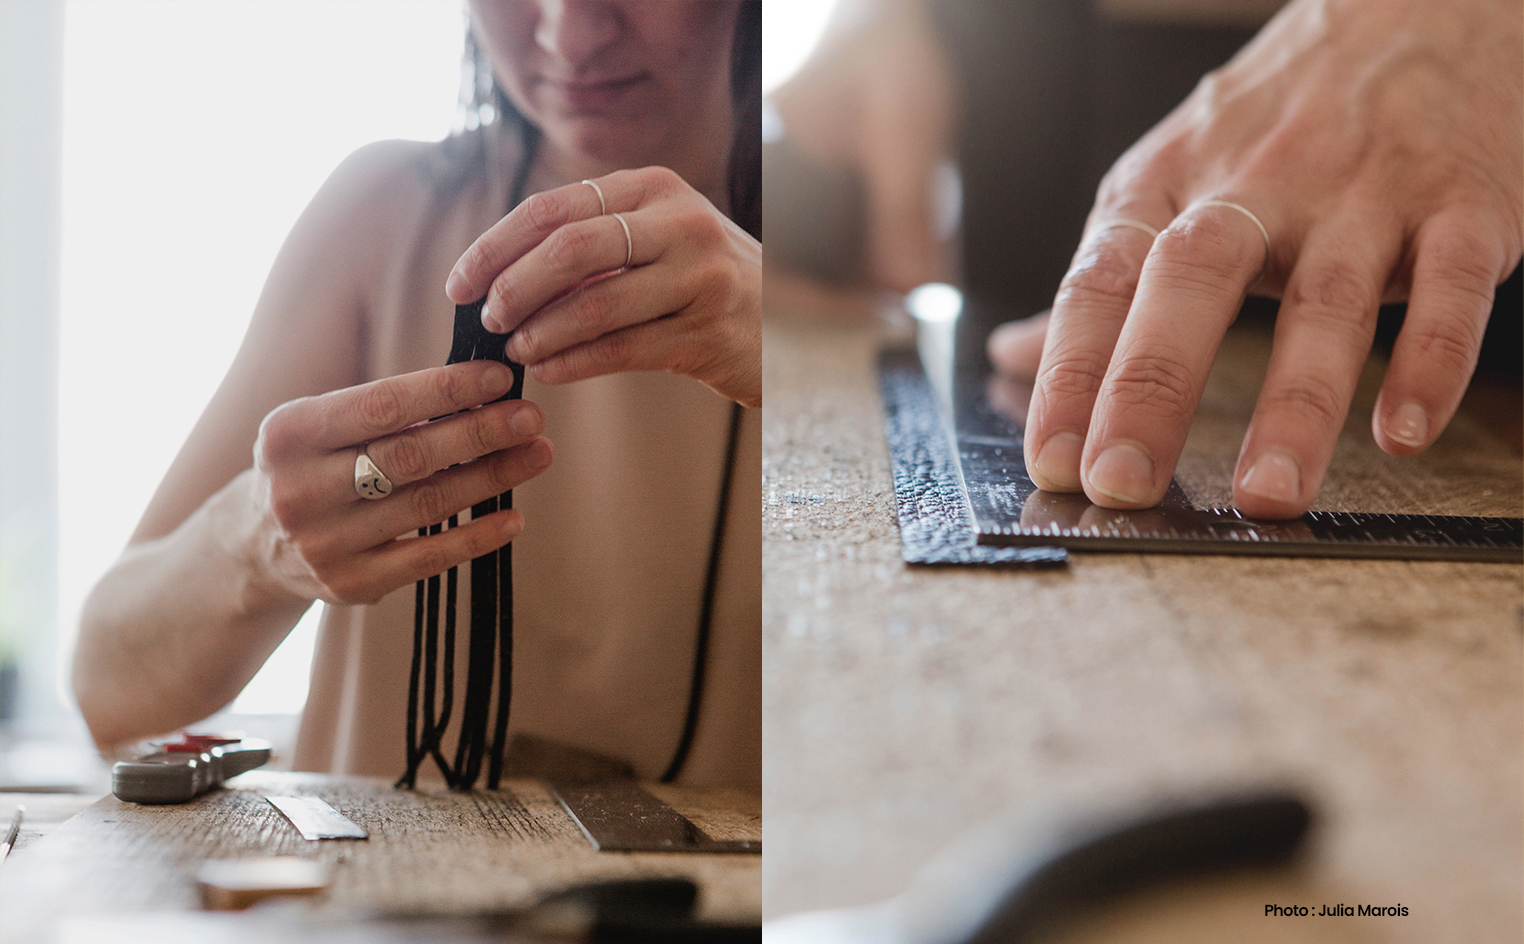 Louve Montréal est une ligne contemporaine de bijoux de bois et de cuir imaginée par Virginie Turcot-Lamarre. Inspirée par la chaleur du bois et du cuir, elle confectionne ses bijoux à partir d’un travail sur la ligne et la géométrie des formes, qu’elle allie pour créer des pièces hybrides et minimalistes. Ses compositions graphiques et épurées privilégient les agencements simples, mais singuliers. Signé métiers d'art. Ensemble artisans CMAQ